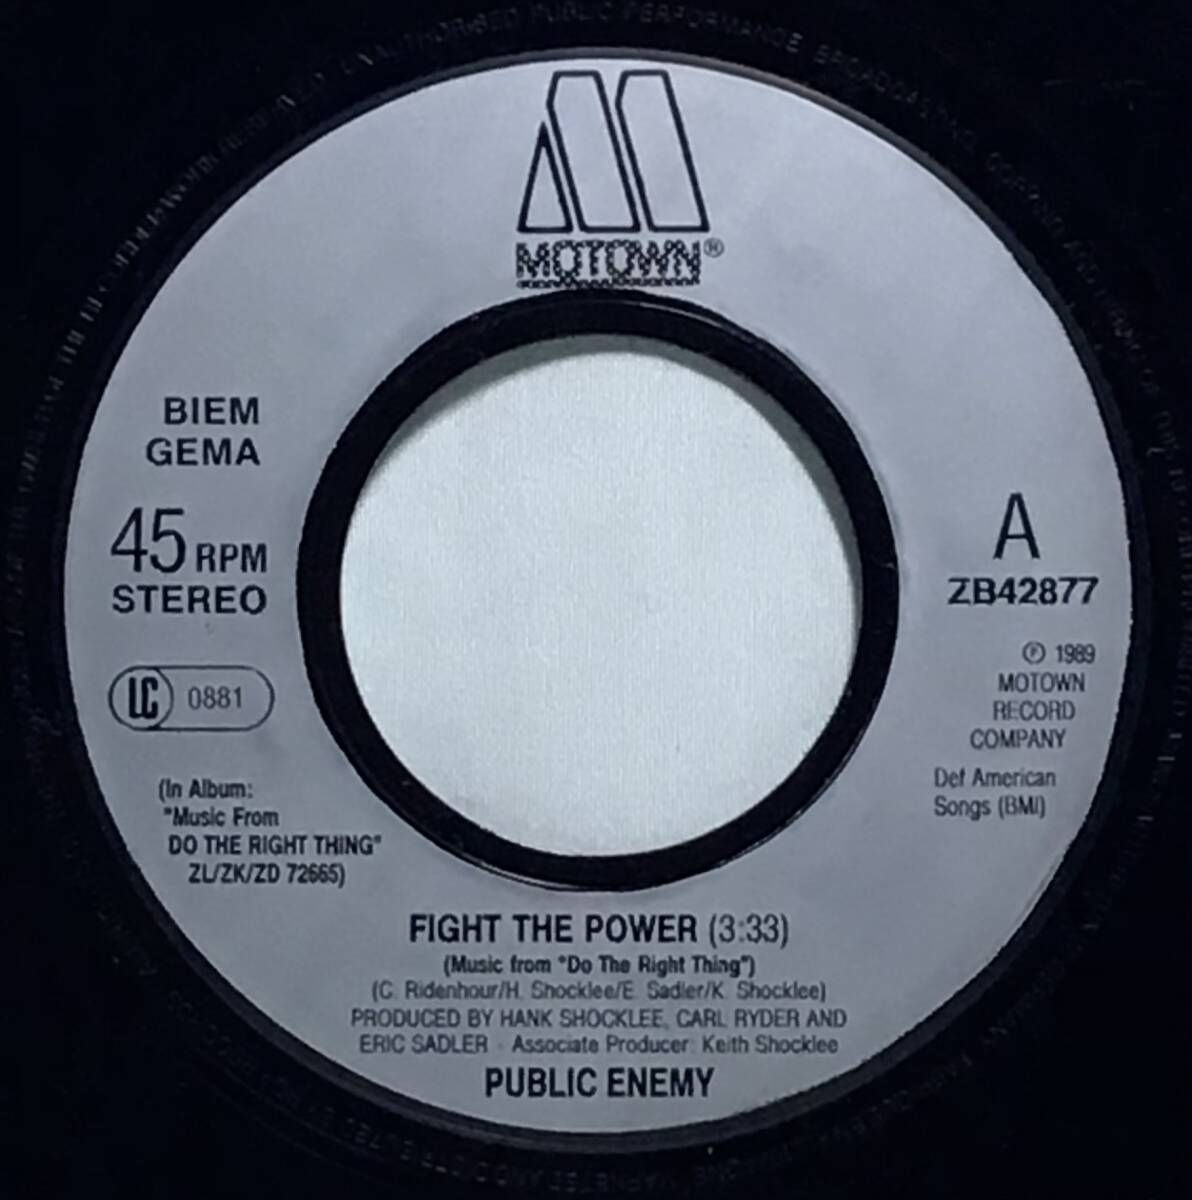 【独7】 映画 DO THE LIGHT THING サントラ曲 PUBLIC ENEMY / FIGHT THE POWER / 1989 ドイツ盤 7インチシングルレコード EP 45 試聴済_画像4